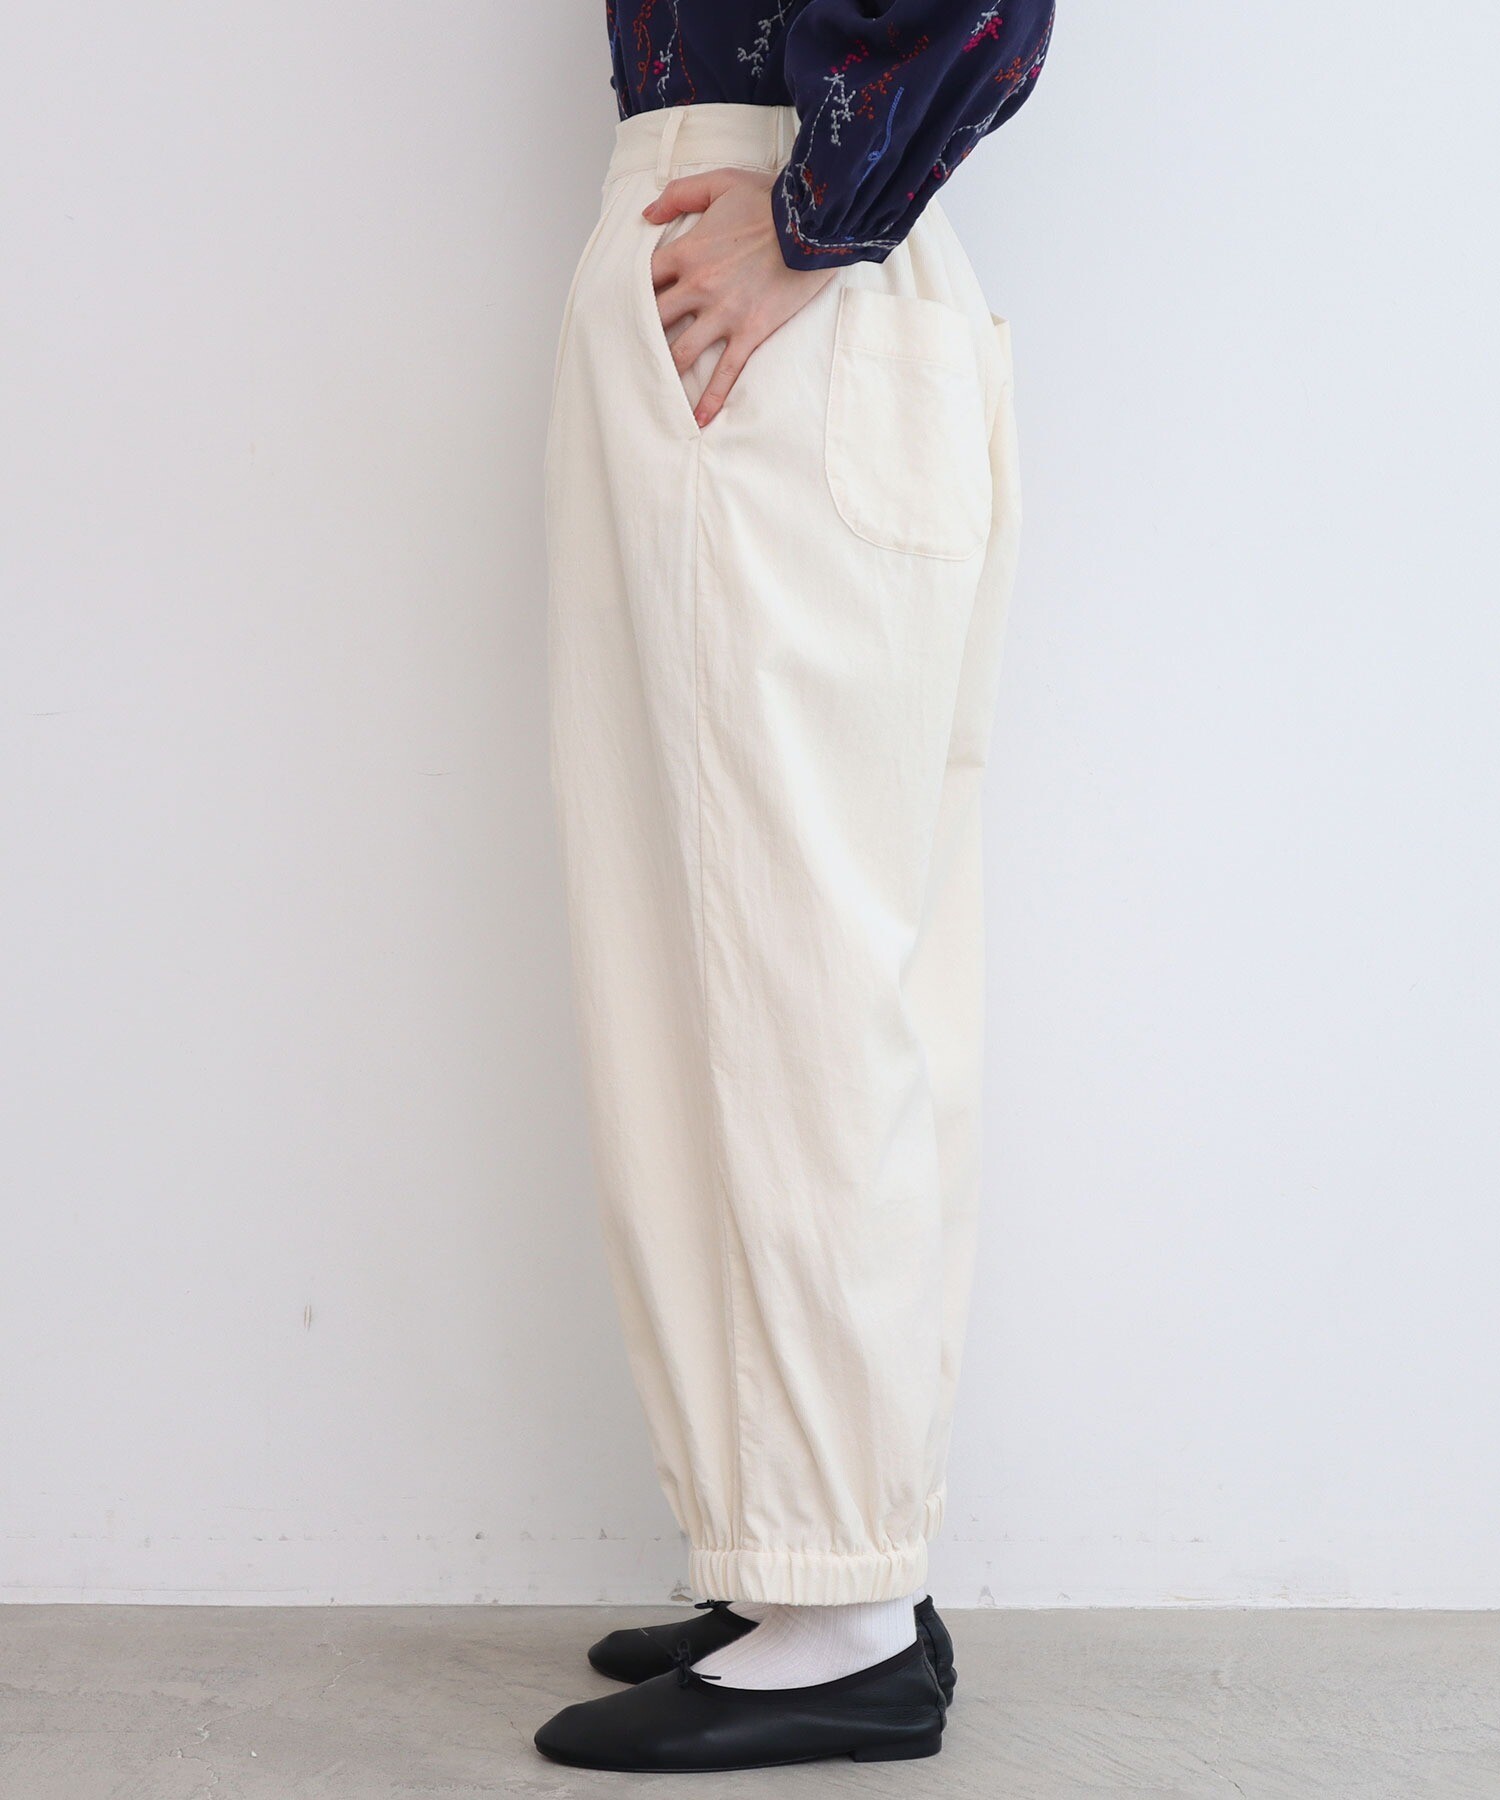 AMBIDEX Store ○シャツコールの裾しぼりパンツ(F キナリ): l'atelier